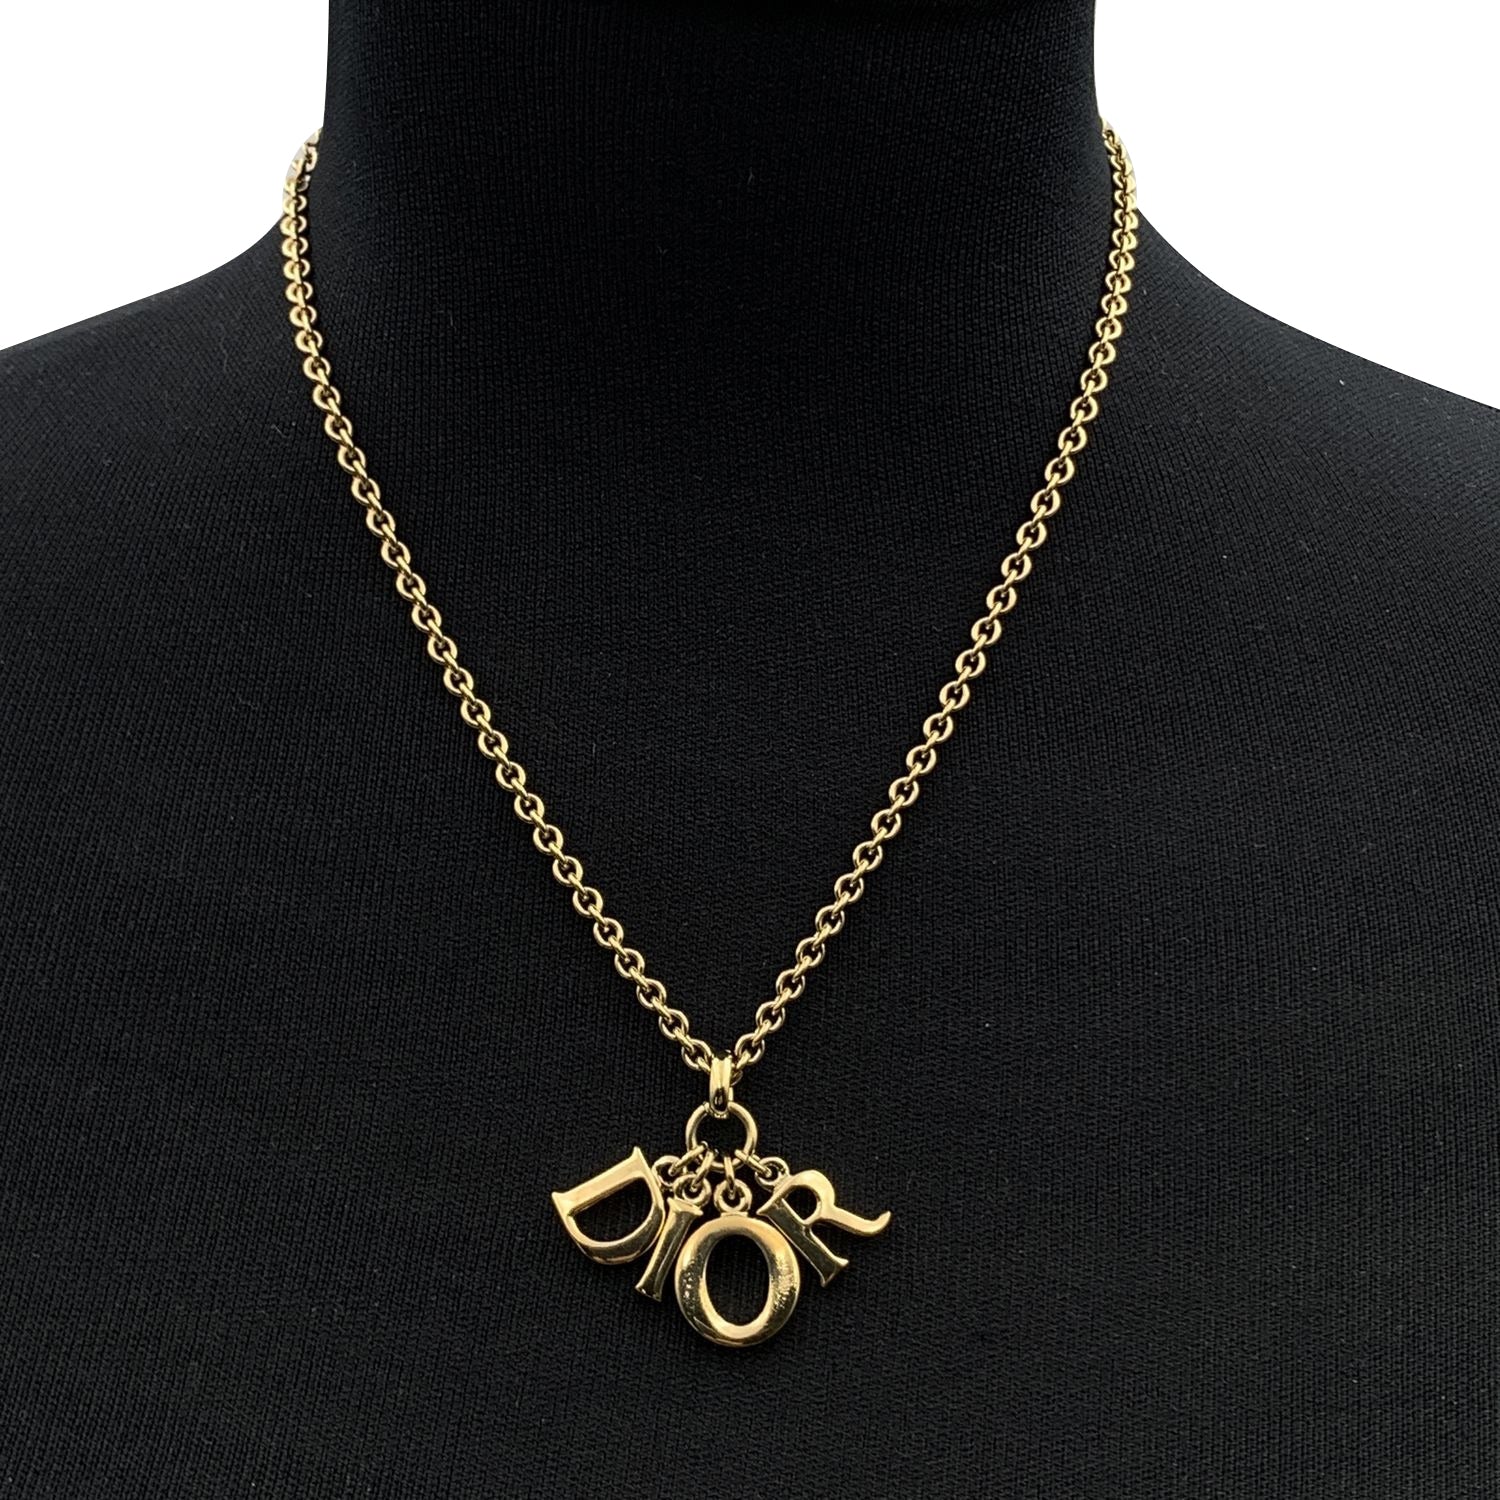 Amazon.com: Christian Dior Necklace